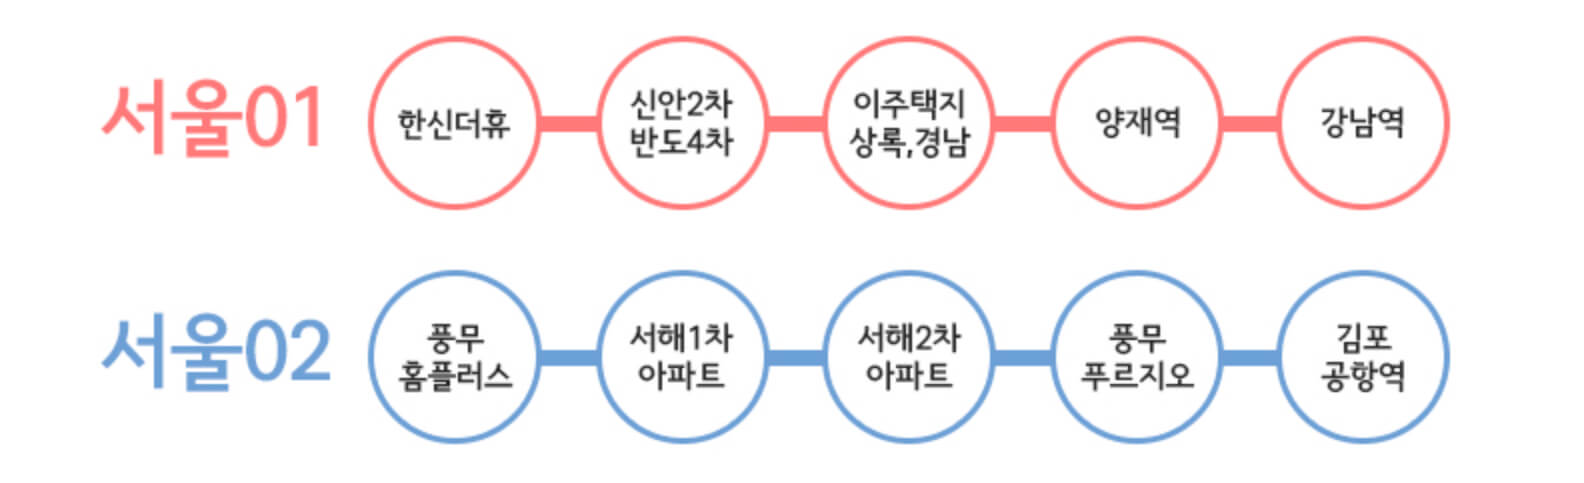 서울동행버스 노선번호